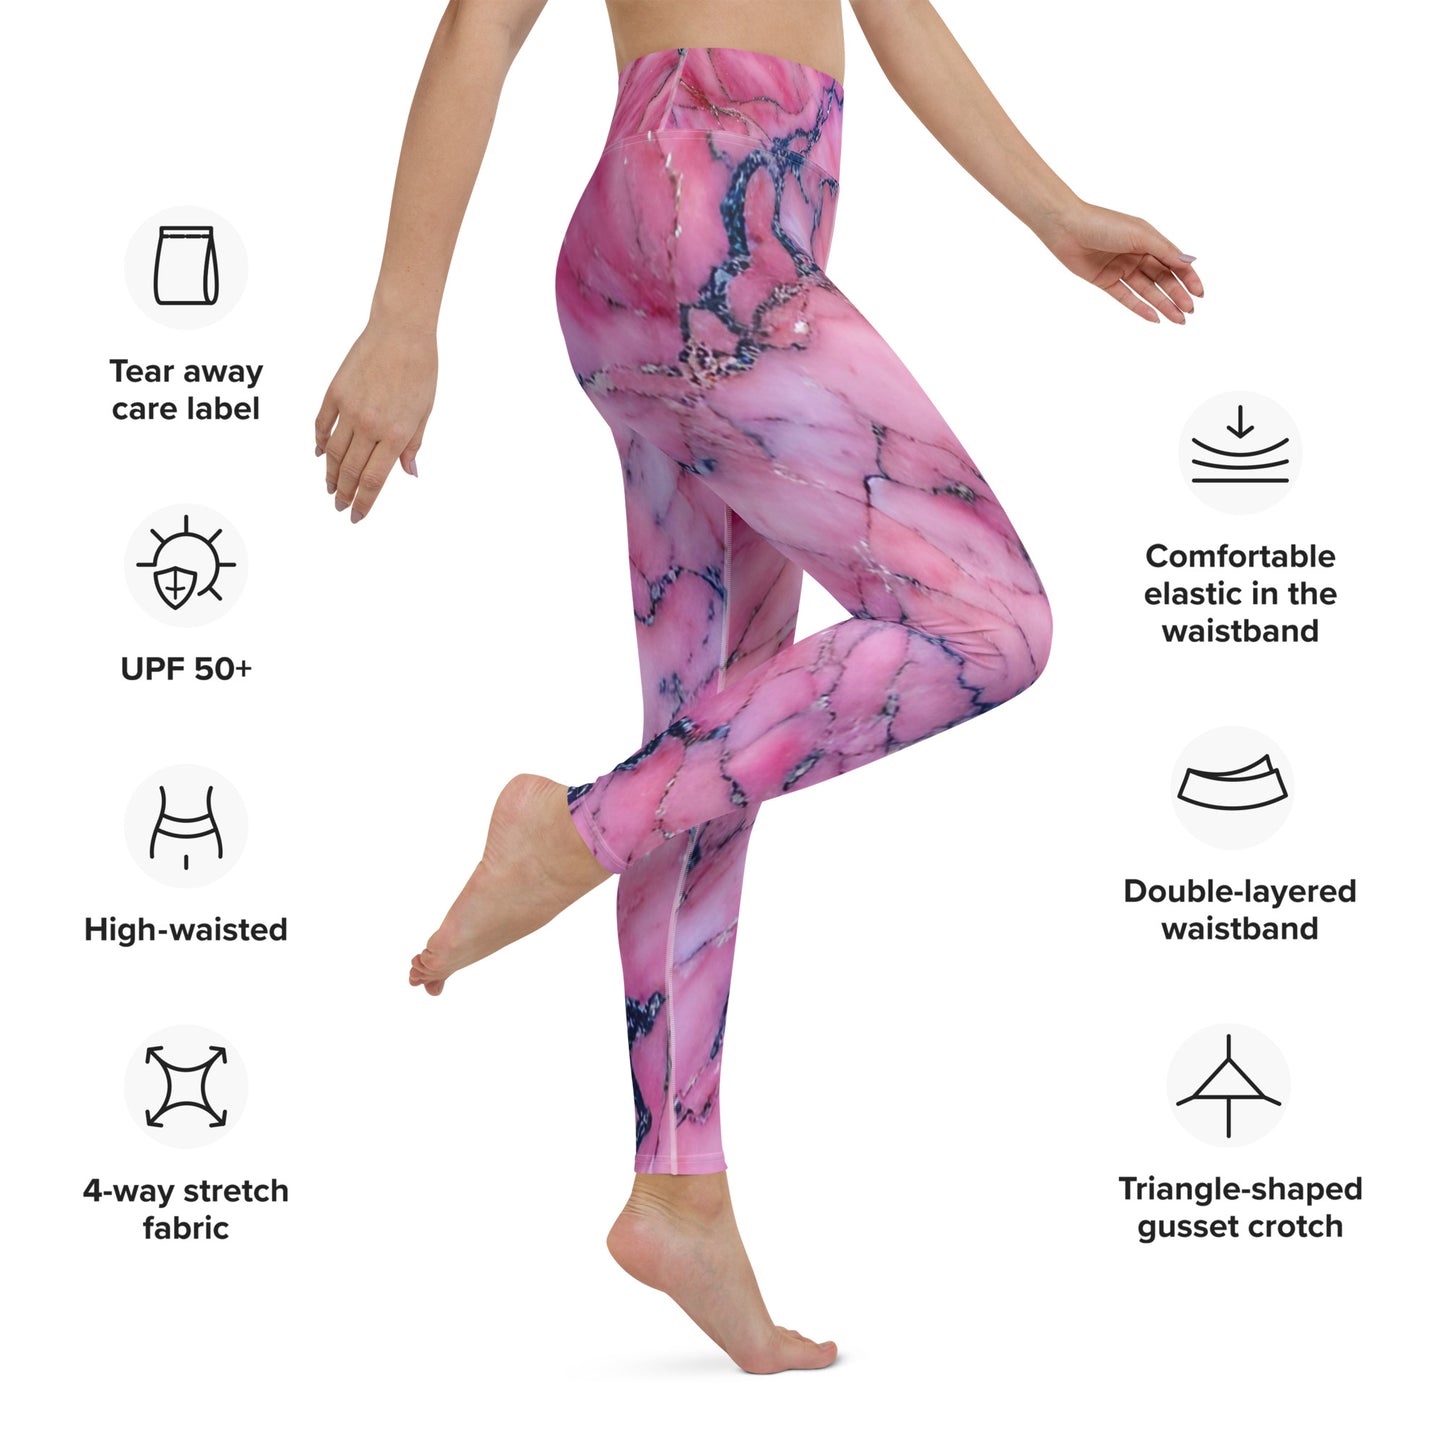 Pink Marble Custom Print Yoga Leggings